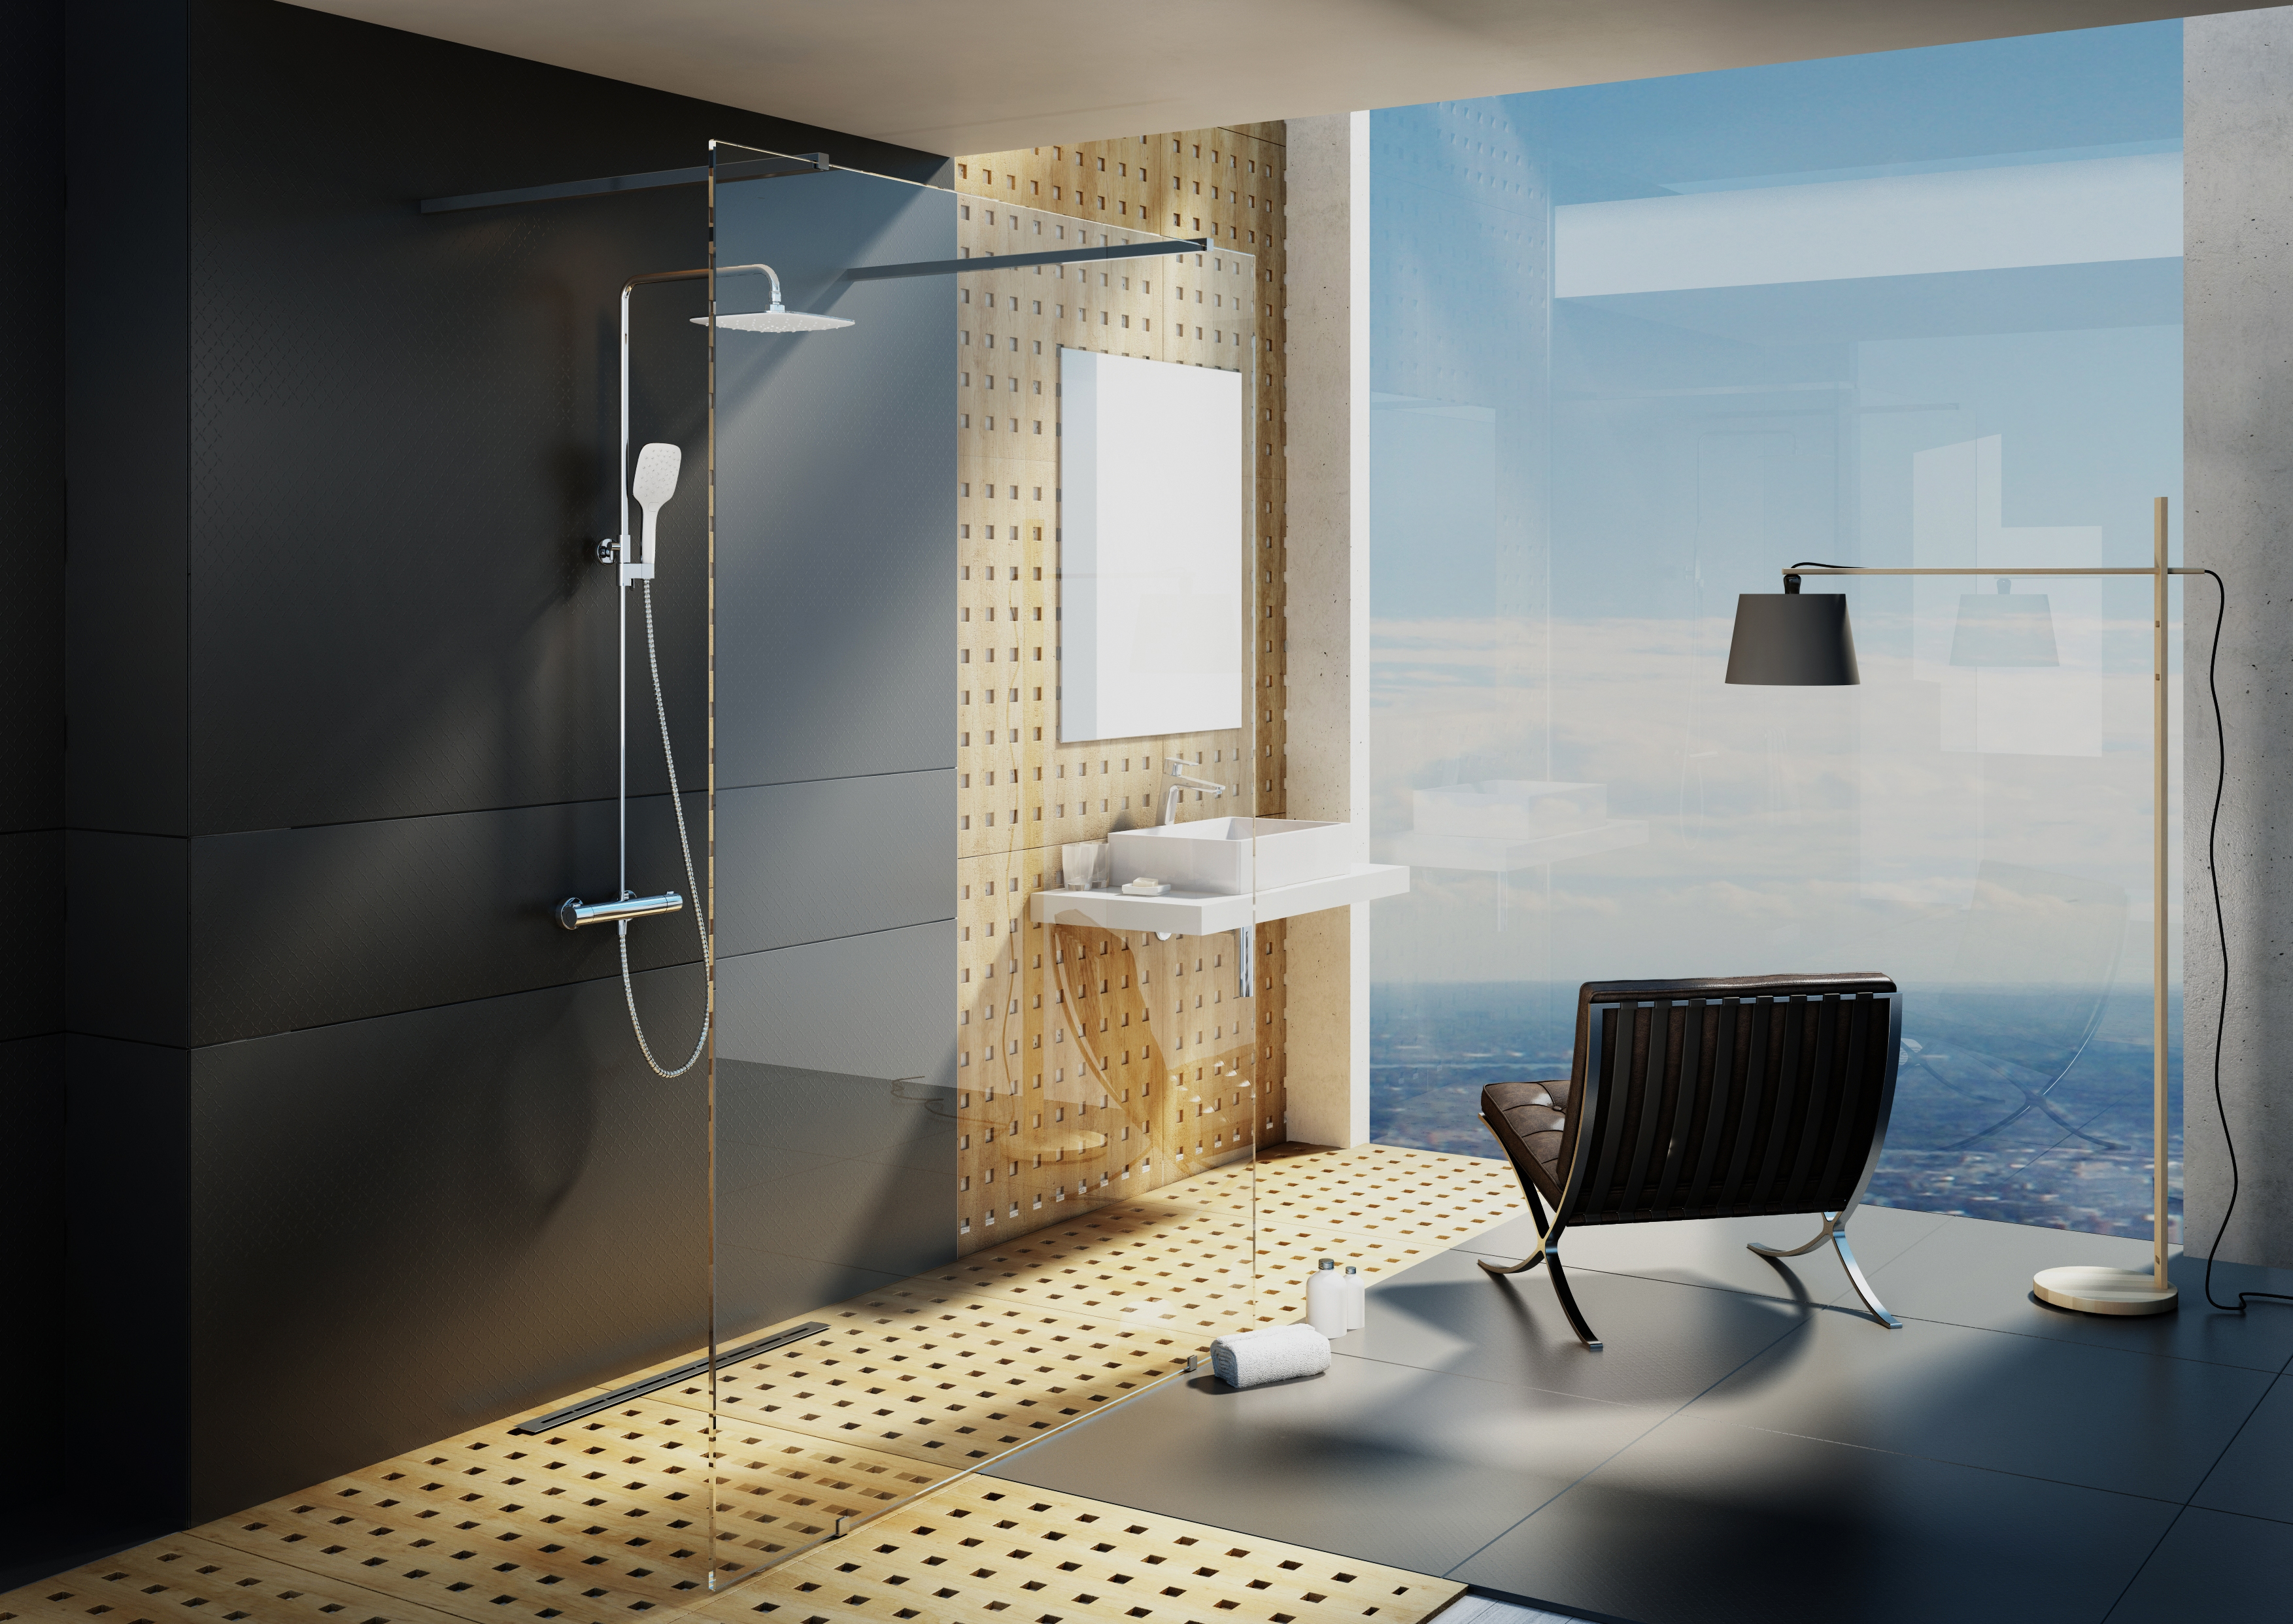 A fürdőszobában élvezheti a termosztátos csapteleppel ellátott kettős zuhanyrendszer nyújtotta örömöket is.